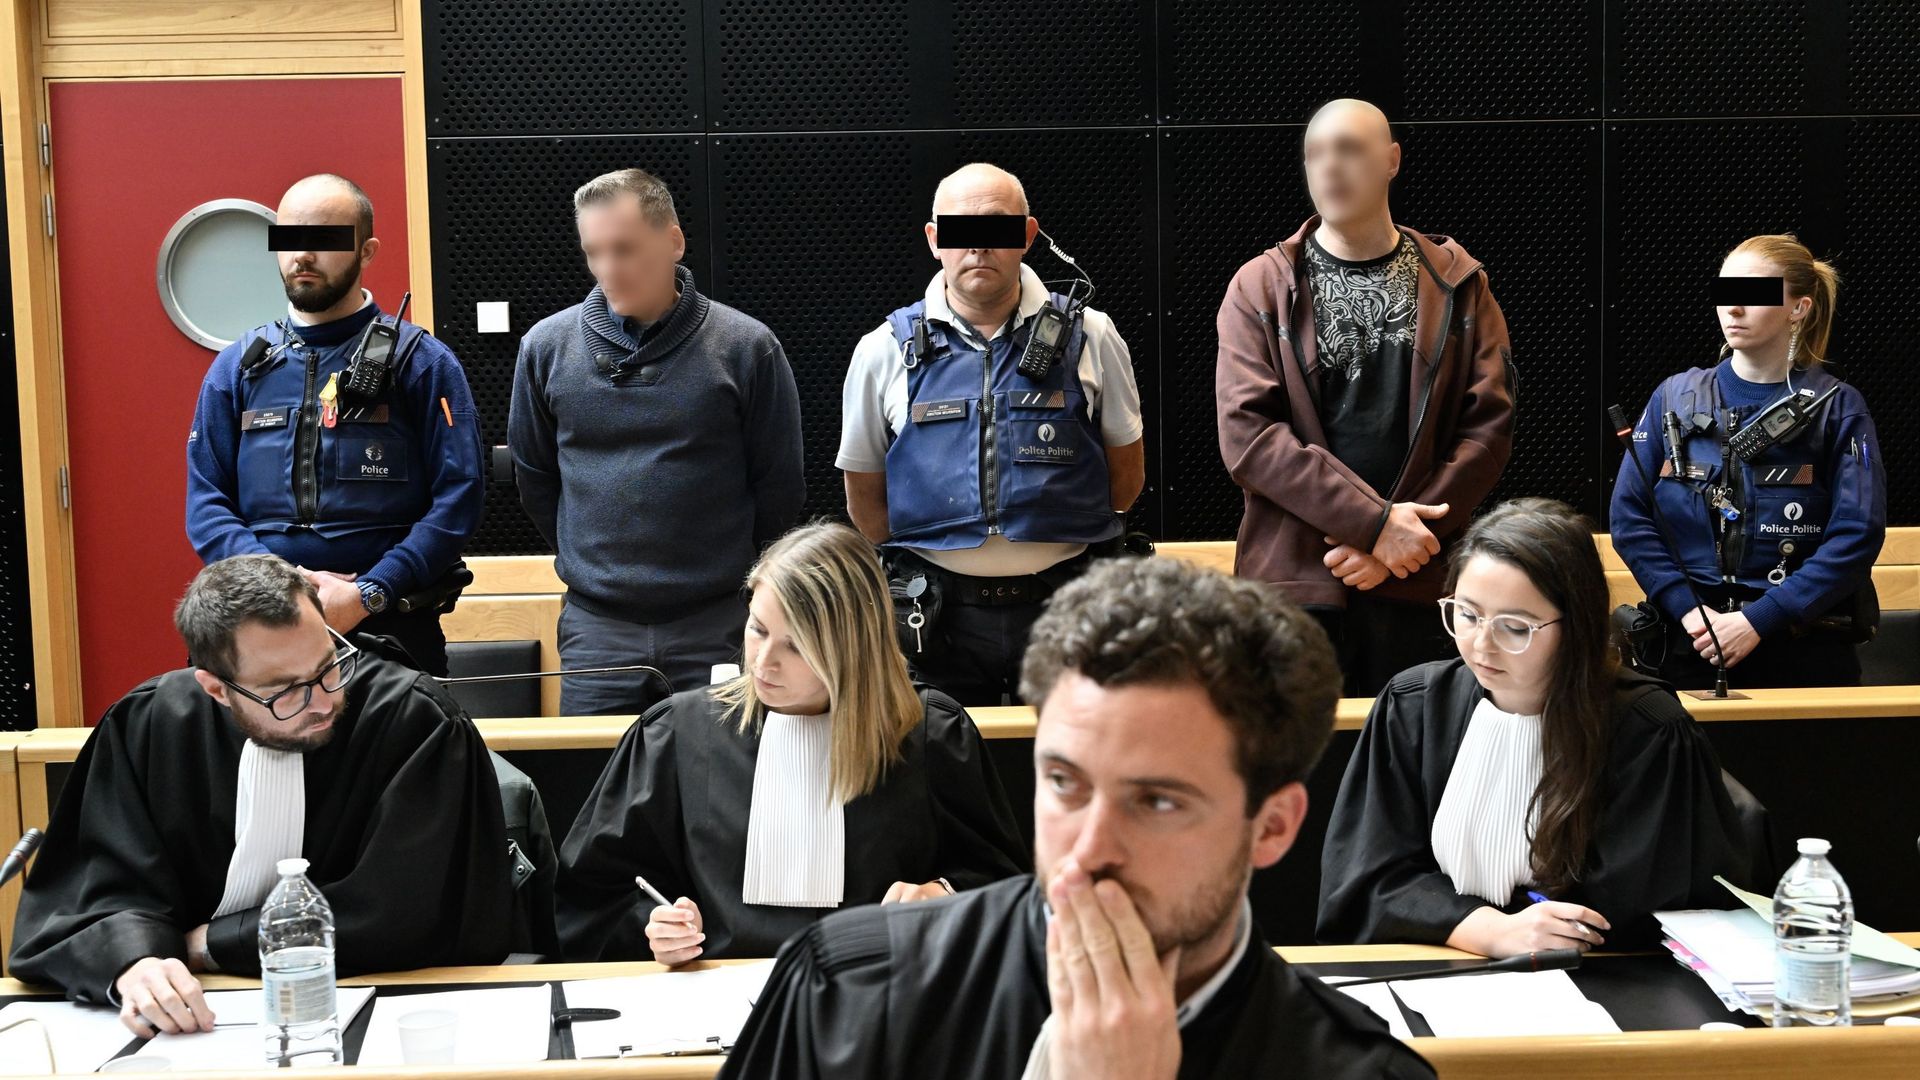  Johnny Vanhoutte et Claudy Putman, les accusés, photographiés lors de la constitution du jury le mercredi 17 mai 2023 devant la cour d'assises de la province de Hainaut à Mons. 